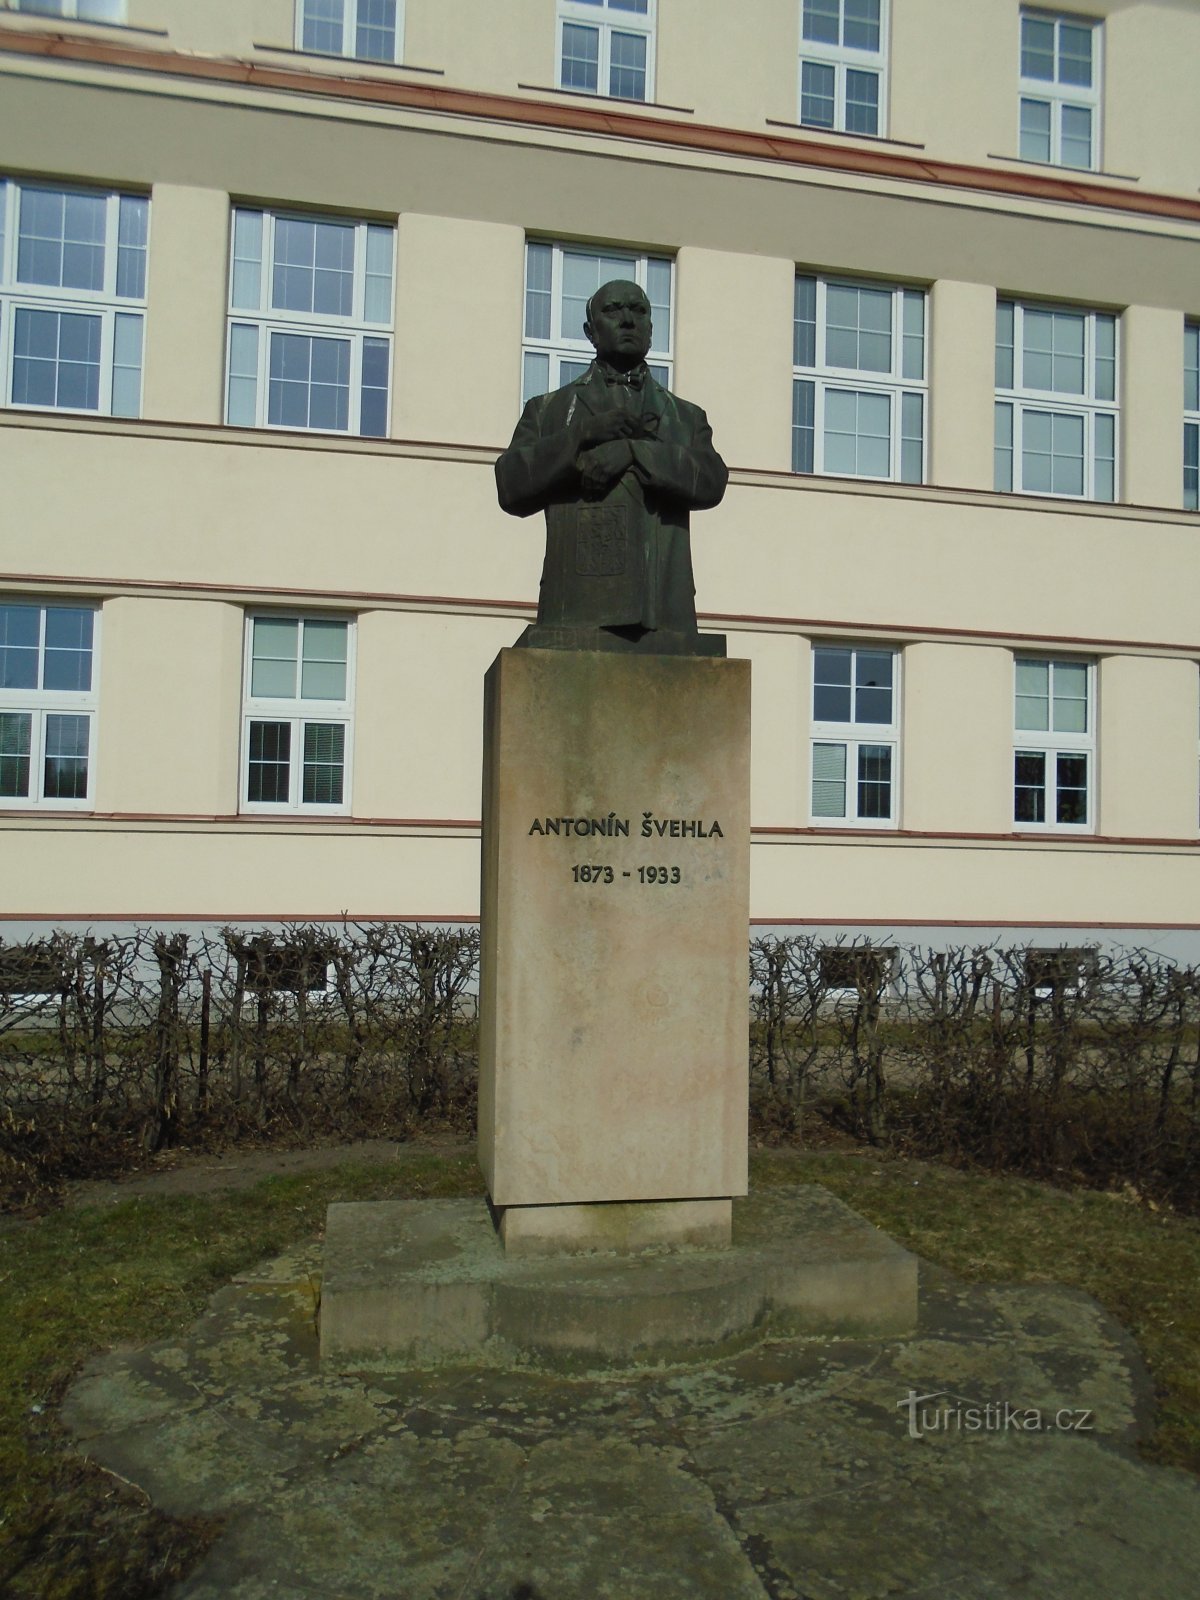 Monumento ad Antonín Švehla (Hradec Králové, 4.3.2018 marzo XNUMX)